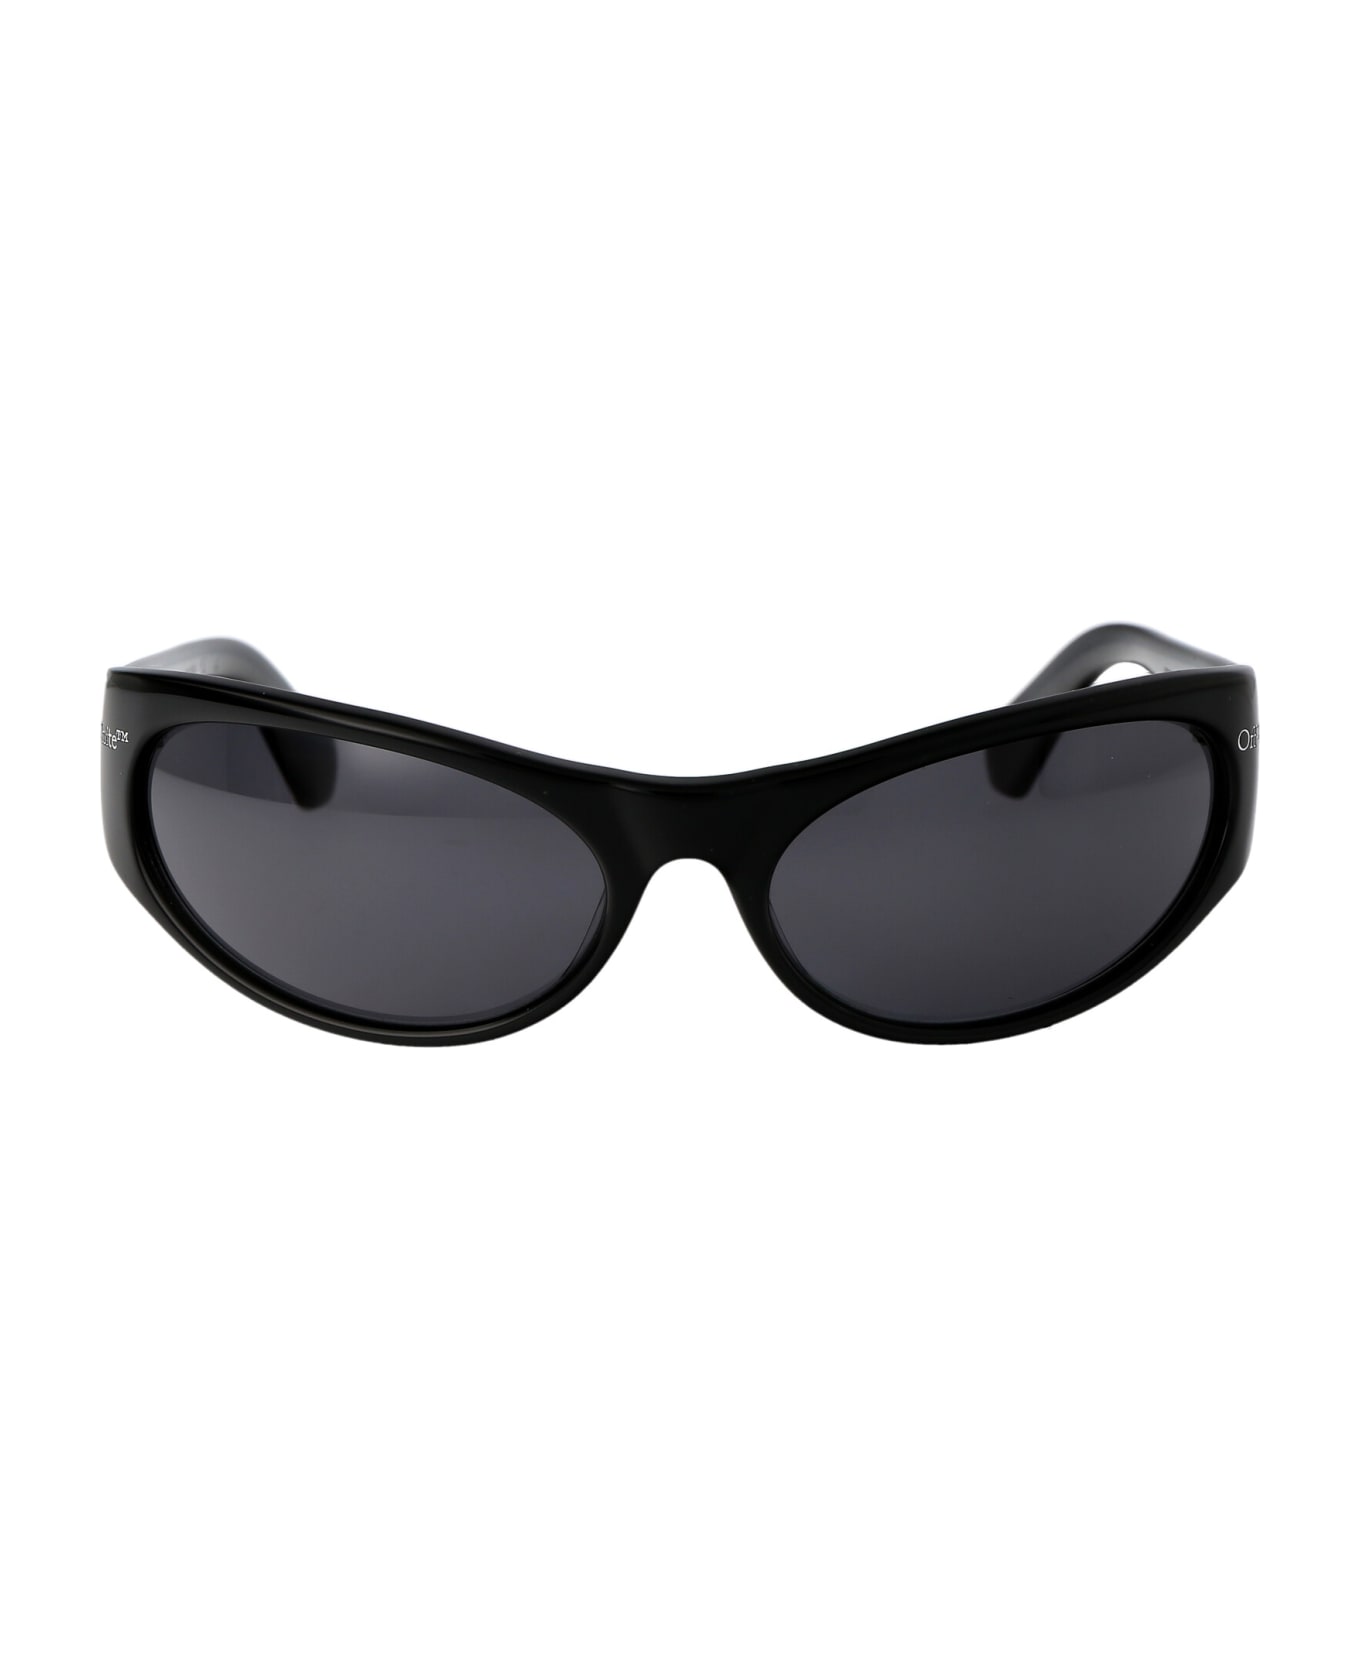 Off-White Napoli Sunglasses - 1007 BLACK